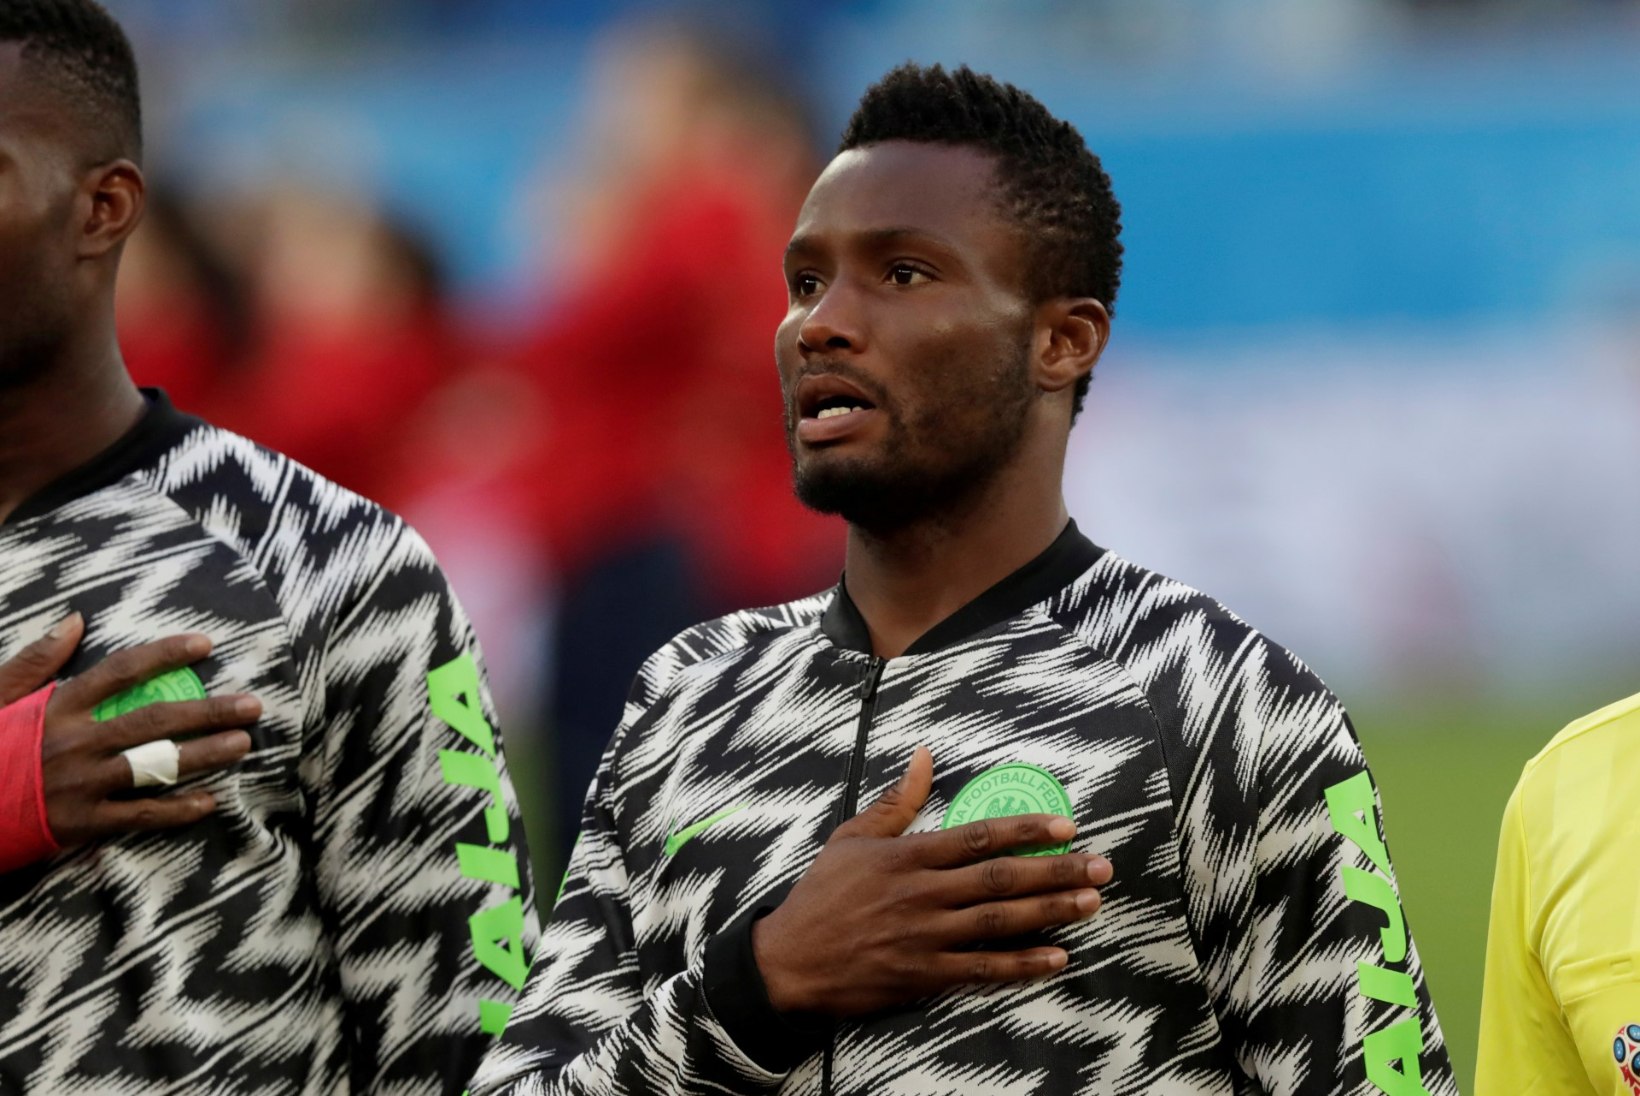 Nigeeria jalgpallur sai enne MM-mängu teate isa röövimisest